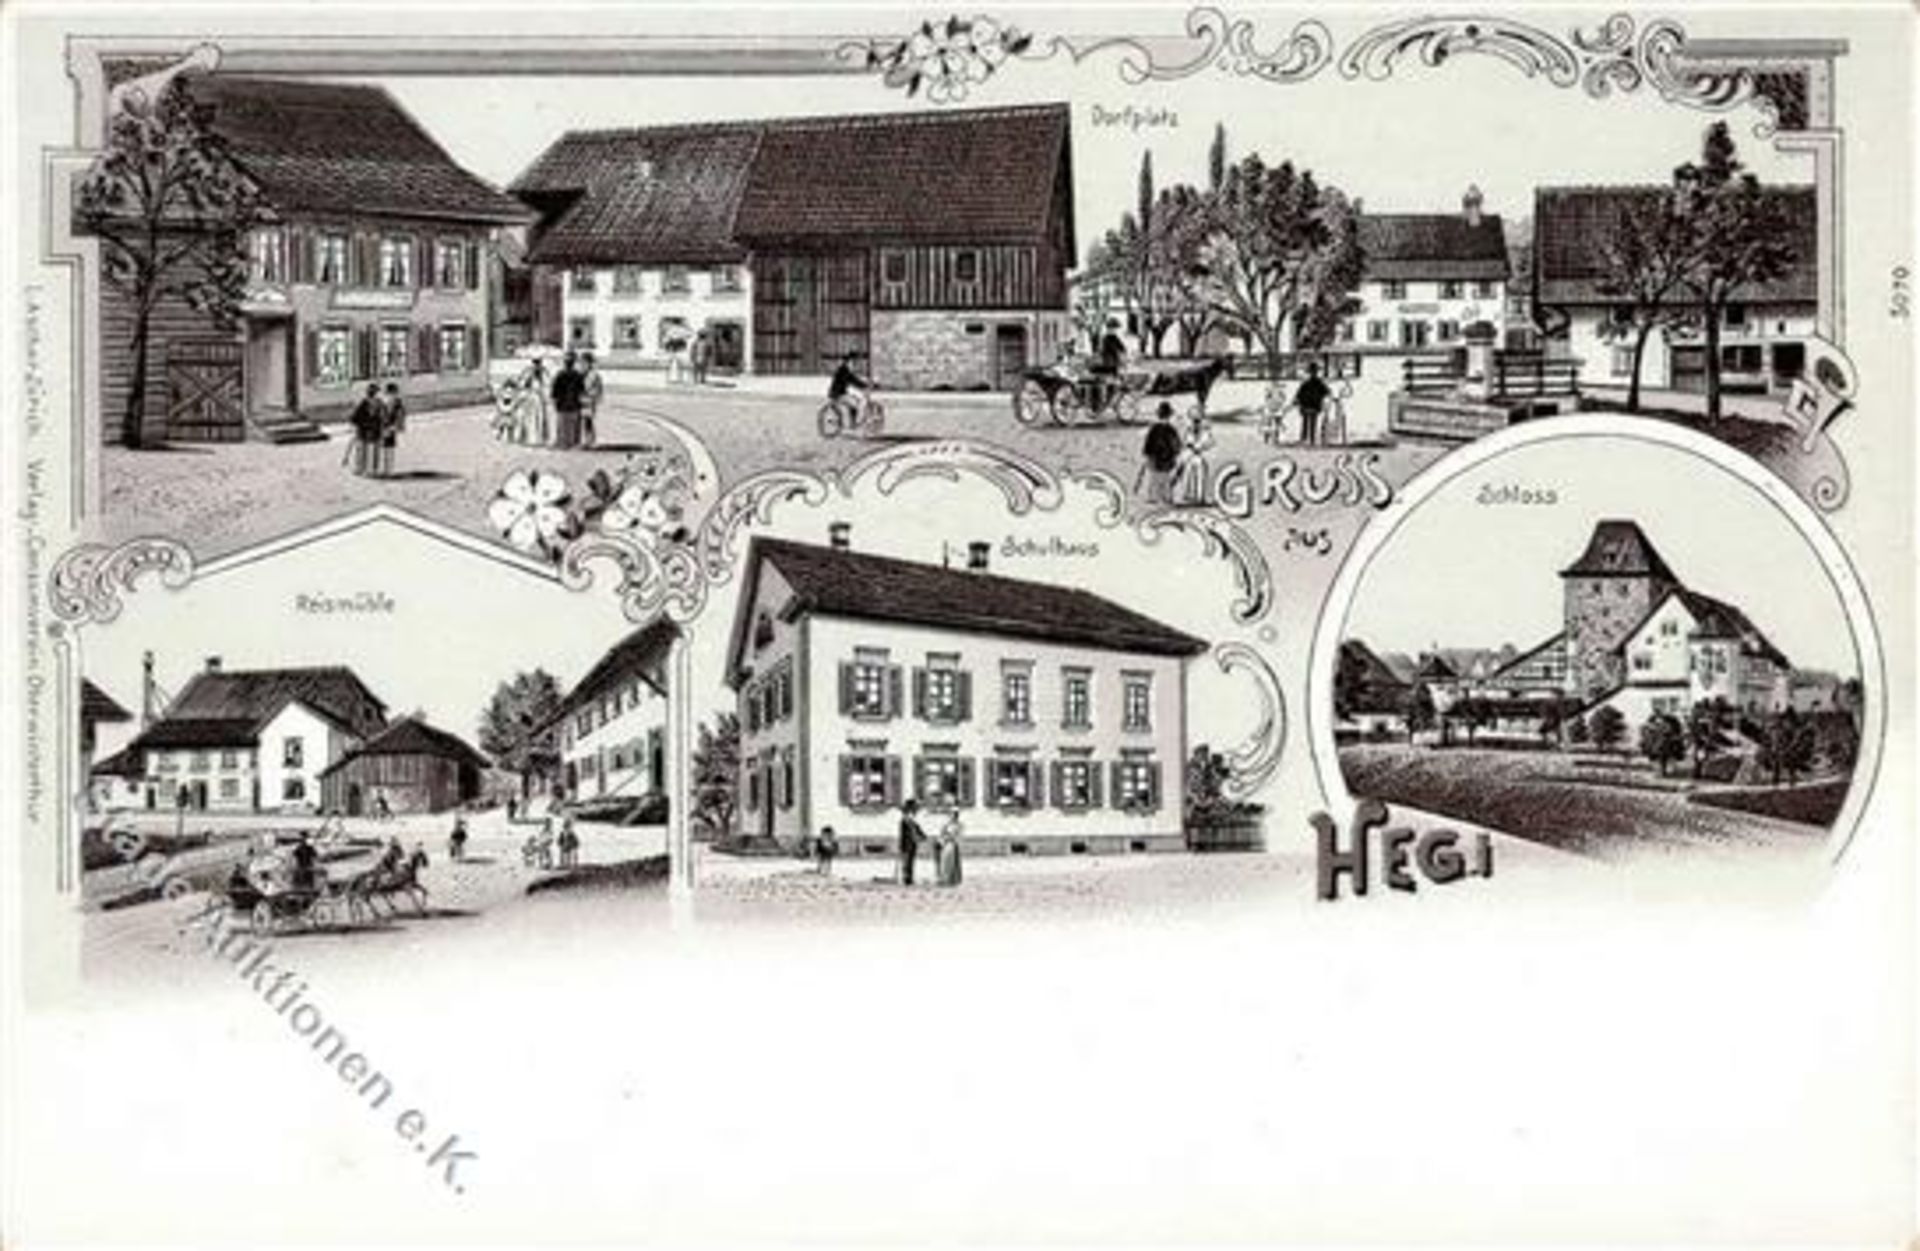 Hegi (8409) Schweiz Gasthaus Reismühle Lithographie I-Dieses Los wird in einer online-Auktion ohne